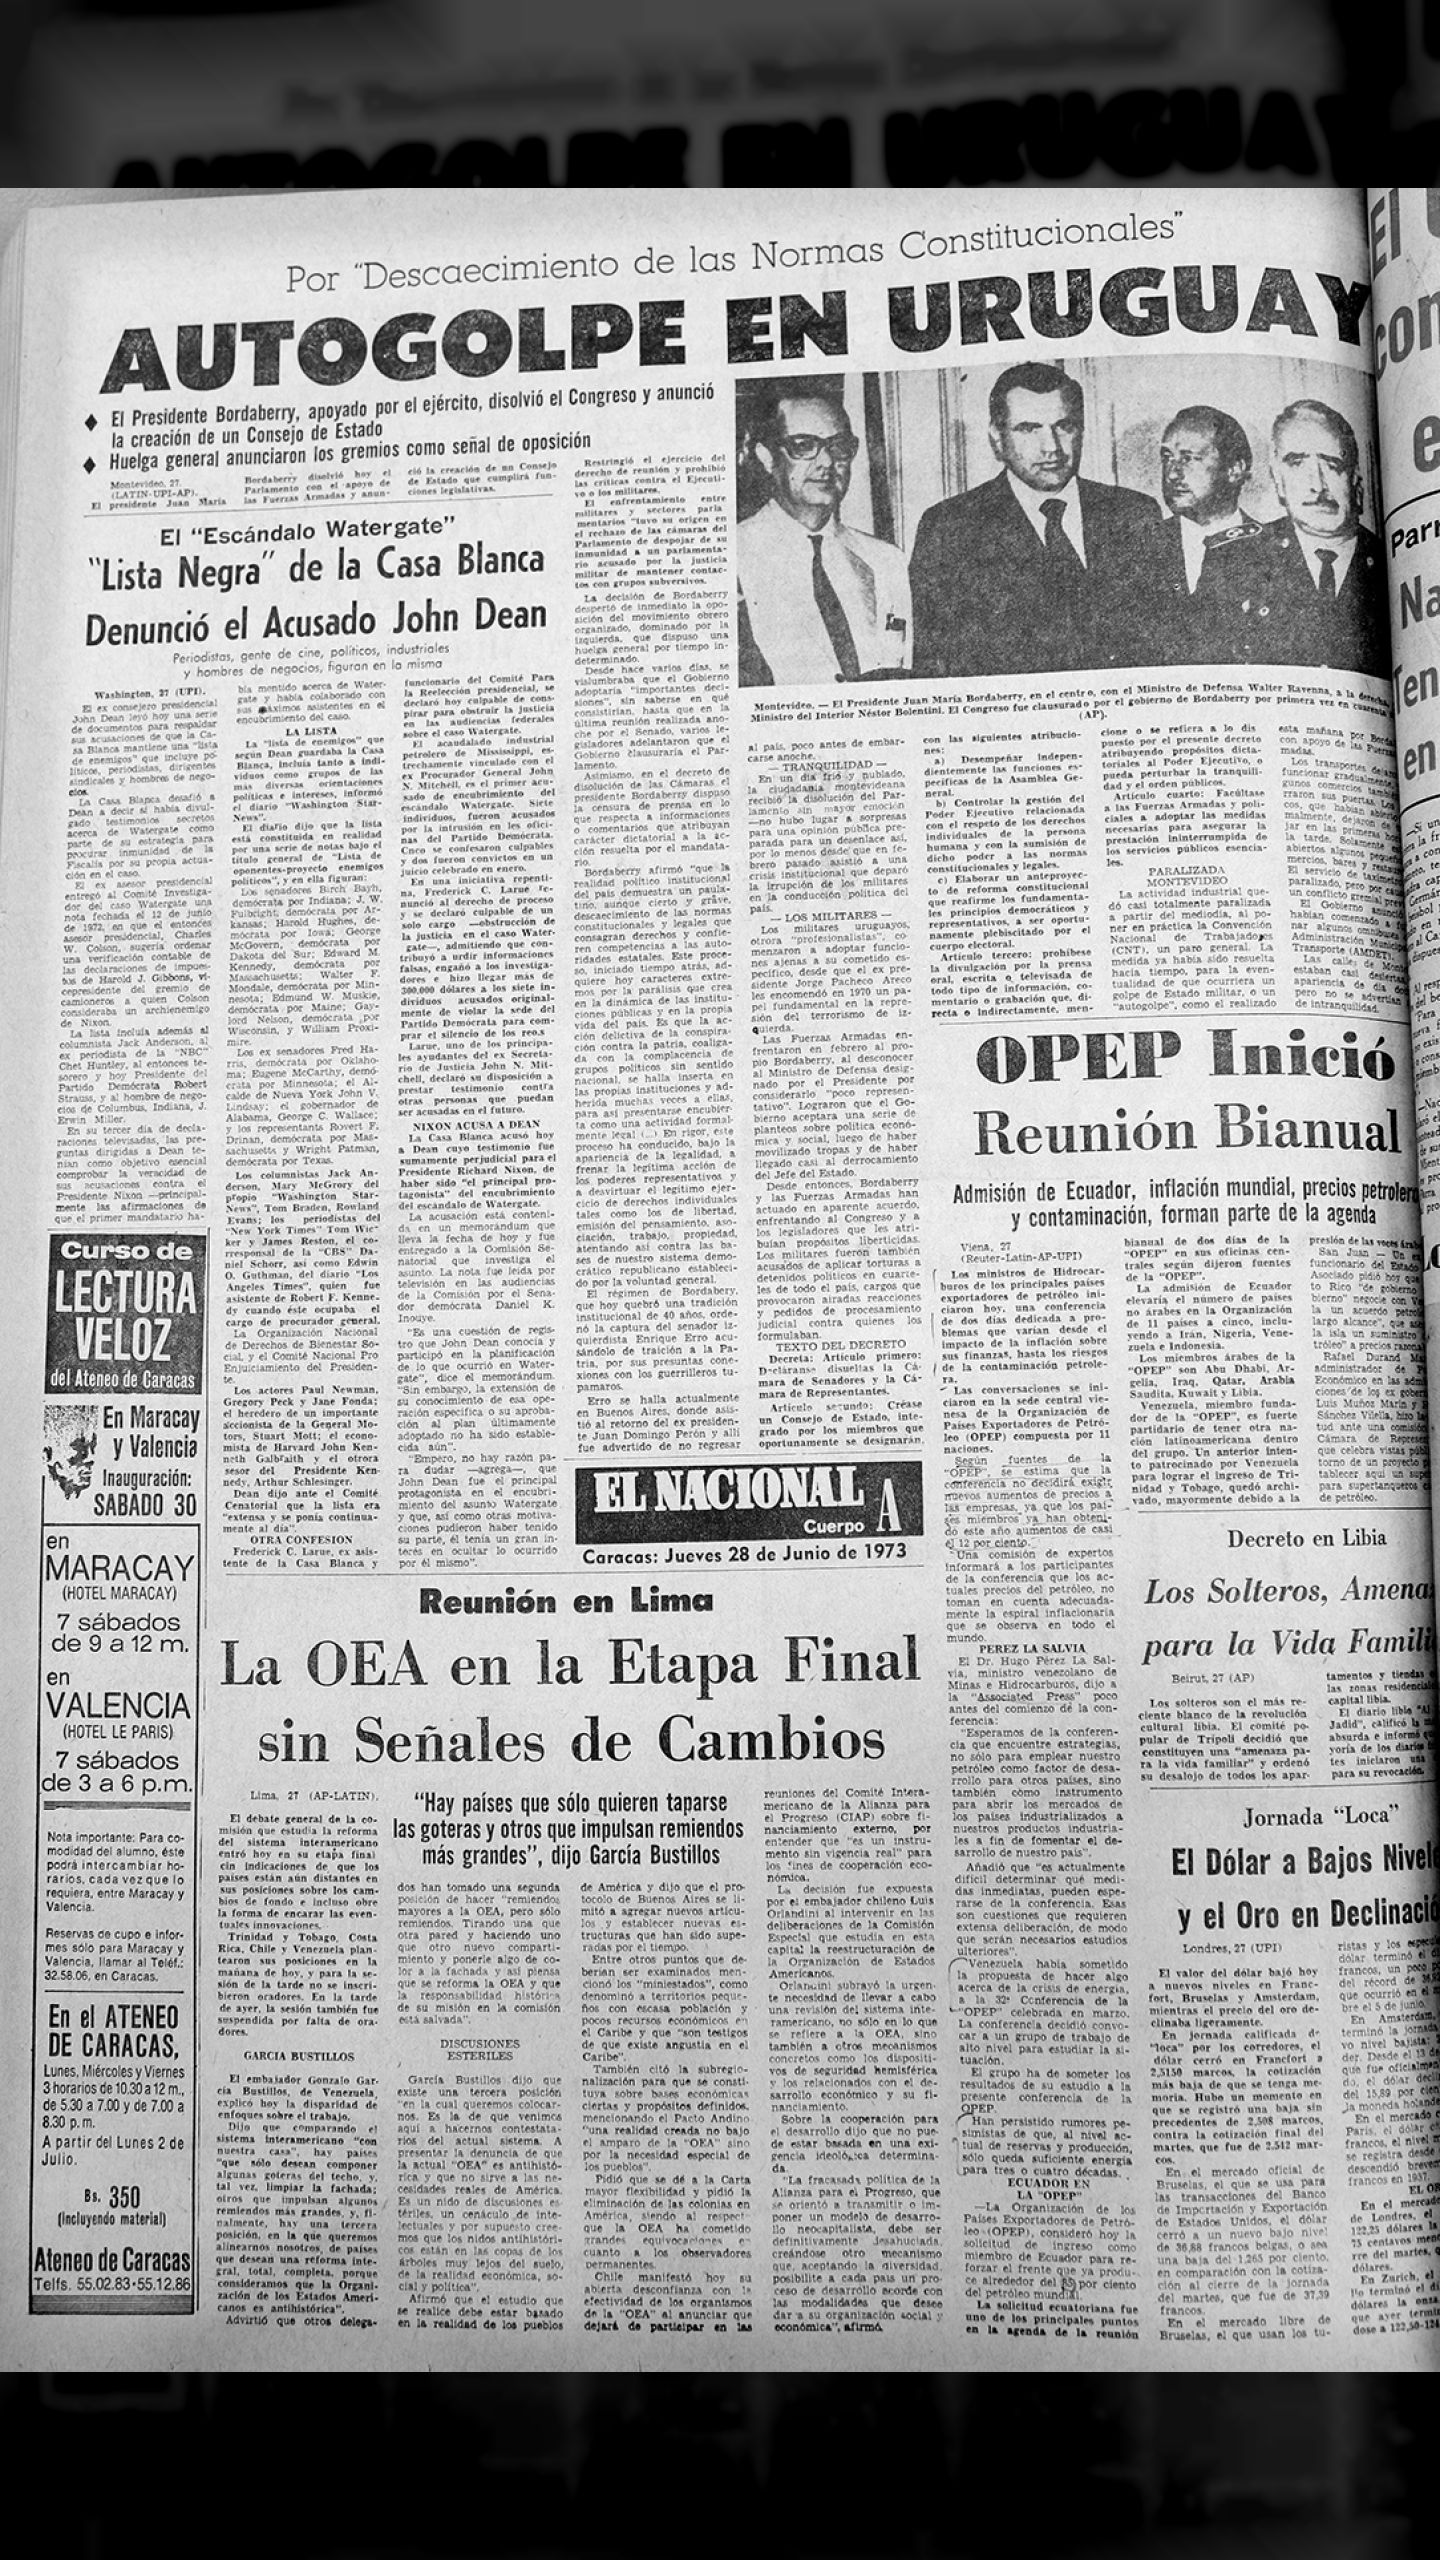 Dos golpes de estado en el Cono Sur (El Nacional, 18 de junio 1973)